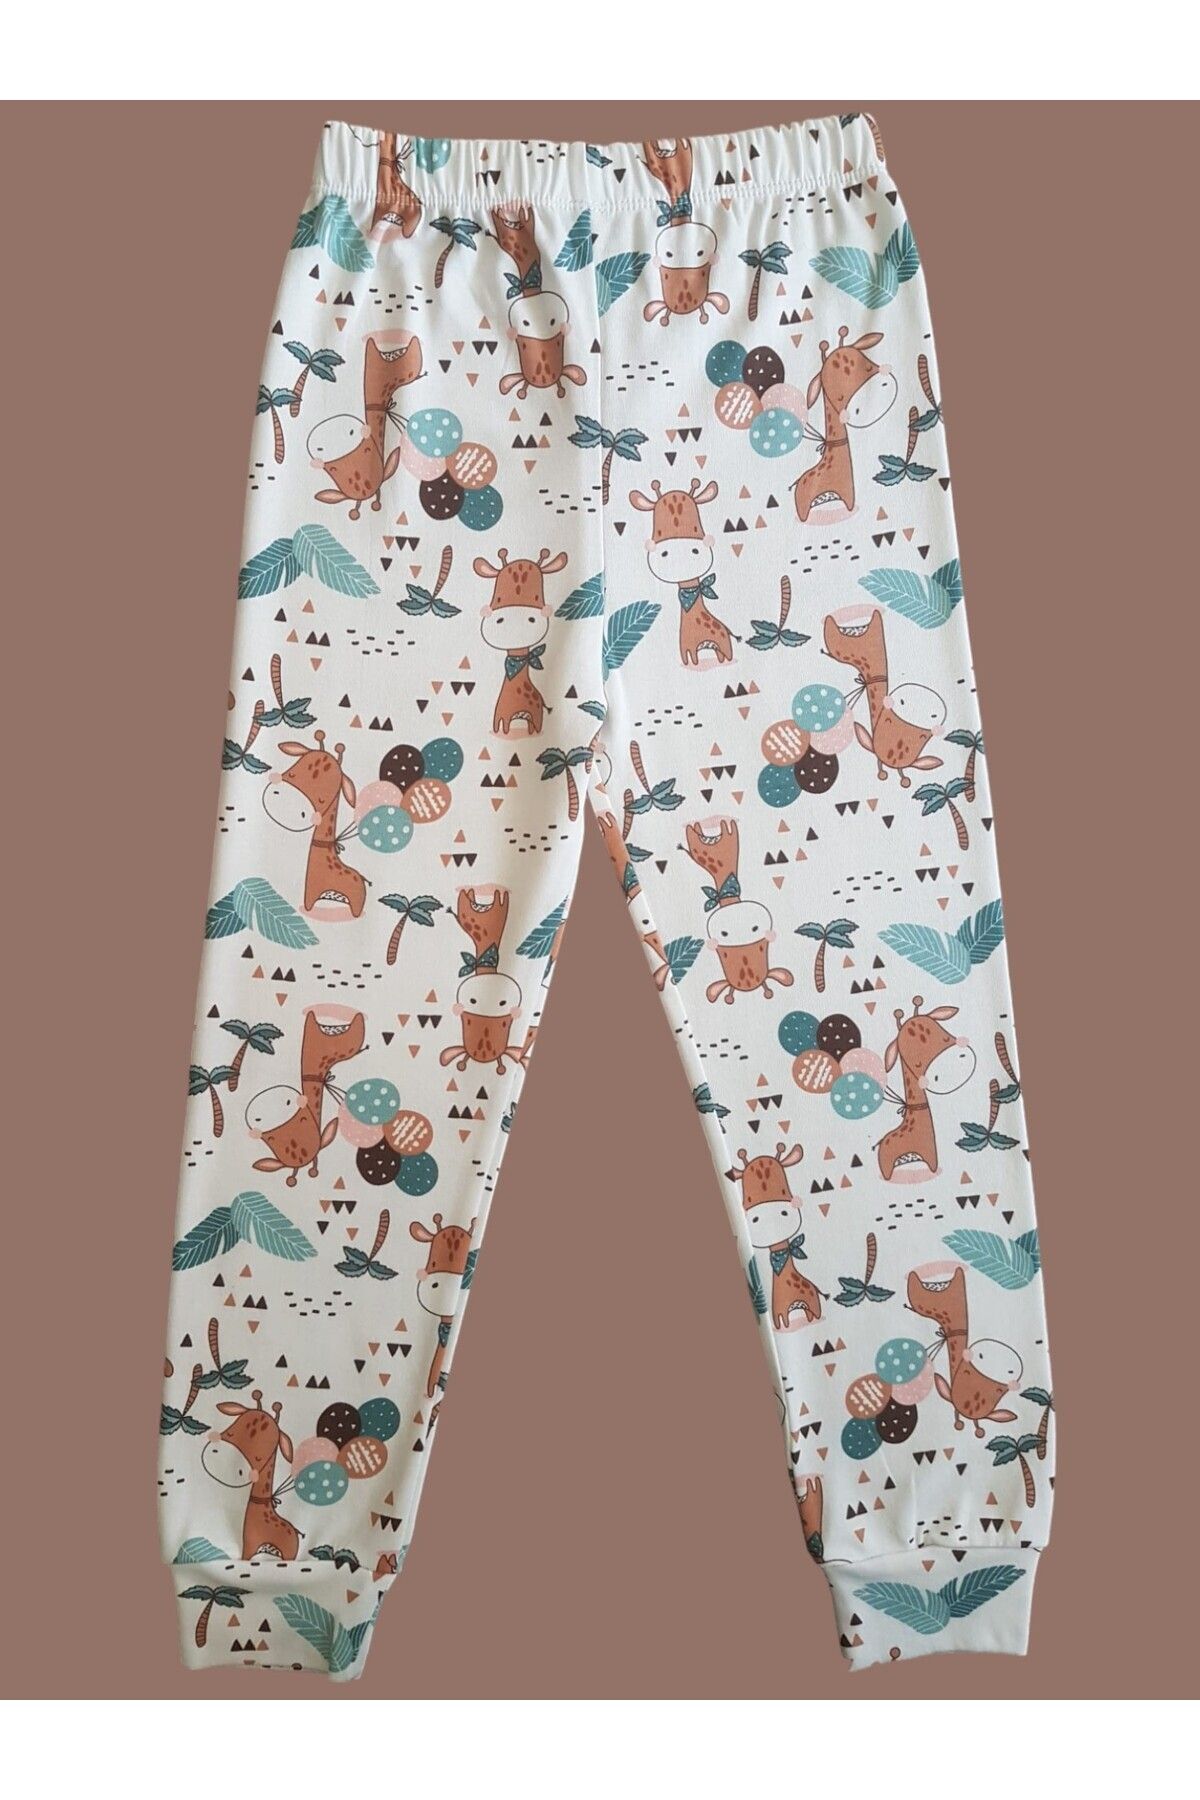 Çamaşır Bahçesi Çocuk pijama altı #desenlipijamaaltı #baskılıpijamaaltı #çamaşırbahçesi #hayvandesenlipijamaaltı